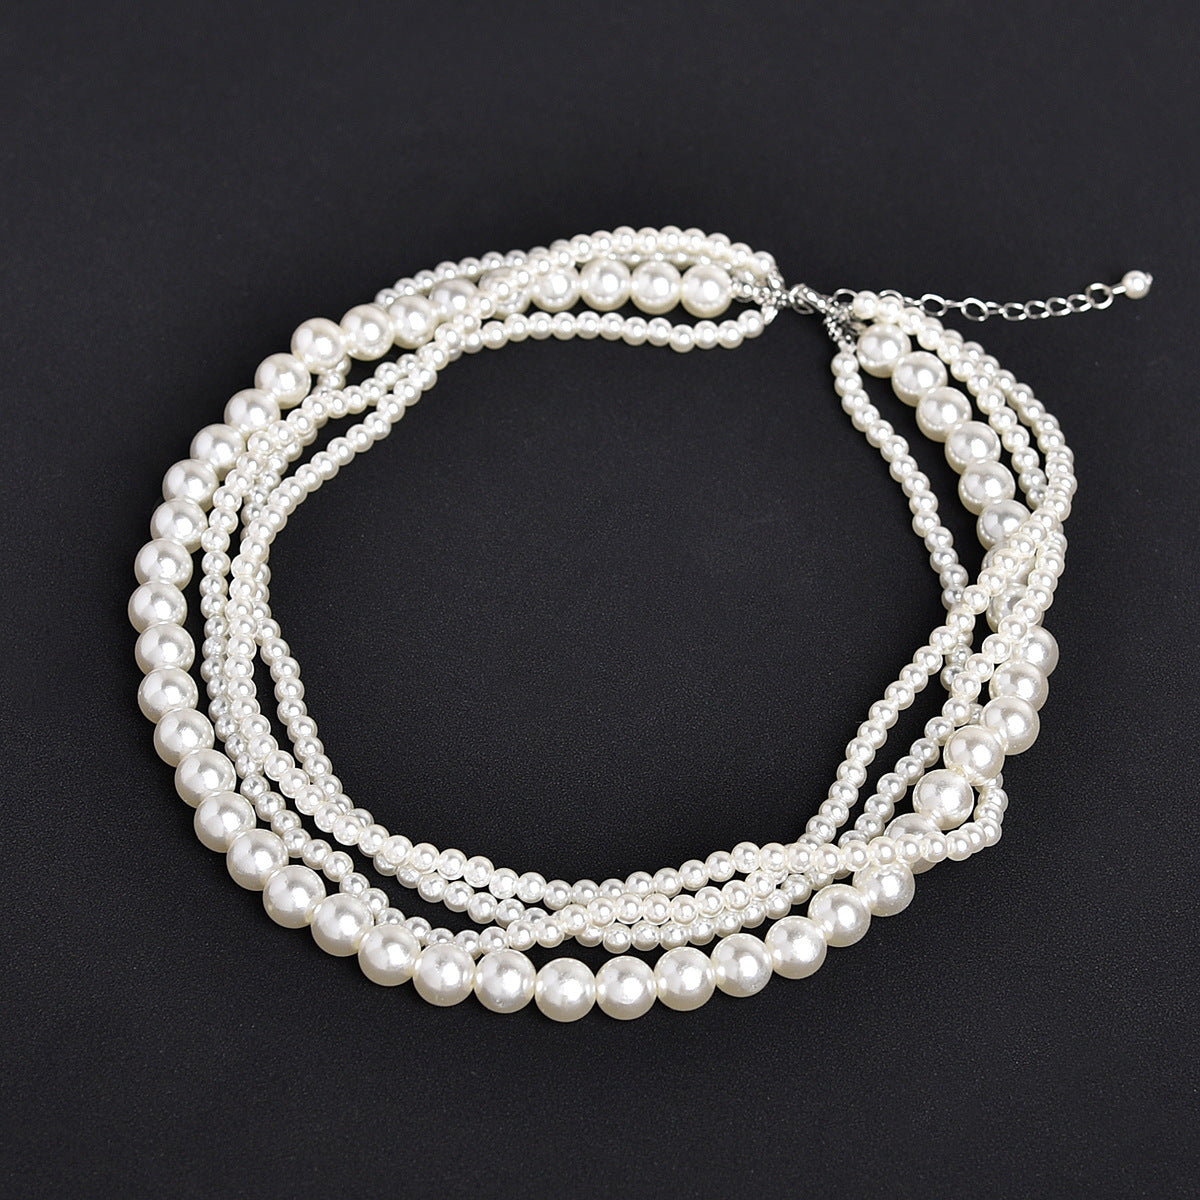 Bulk Pearl Necklaces Kit Vintage Double Layer Necklace Set for Women Wedding Wholesale